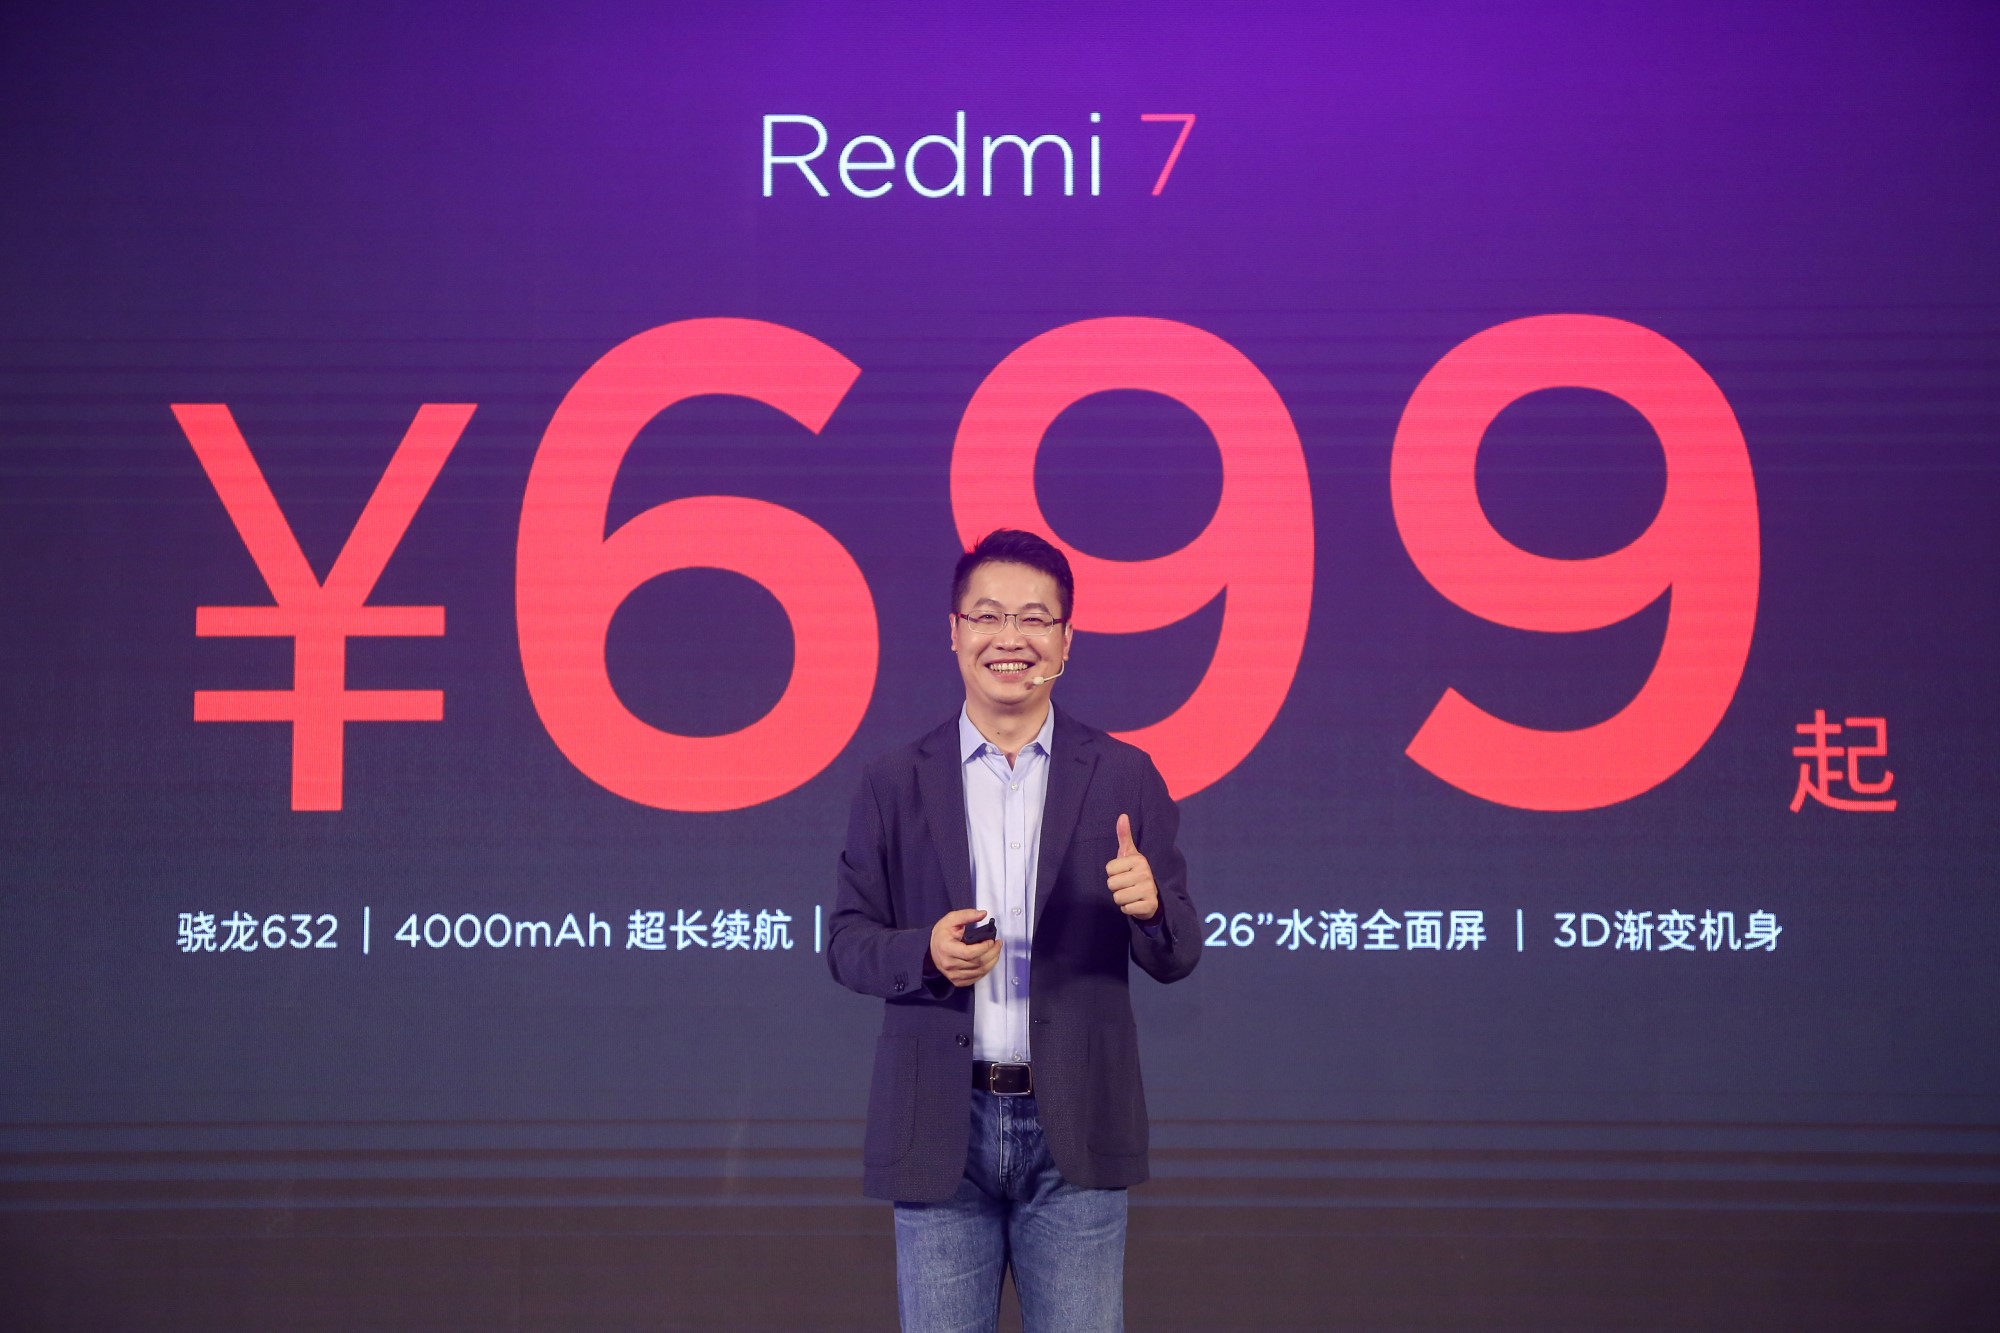 卢伟冰正式执掌红米Redmi品牌 今日发布红米Note 7 - 通信终端 — C114通信网